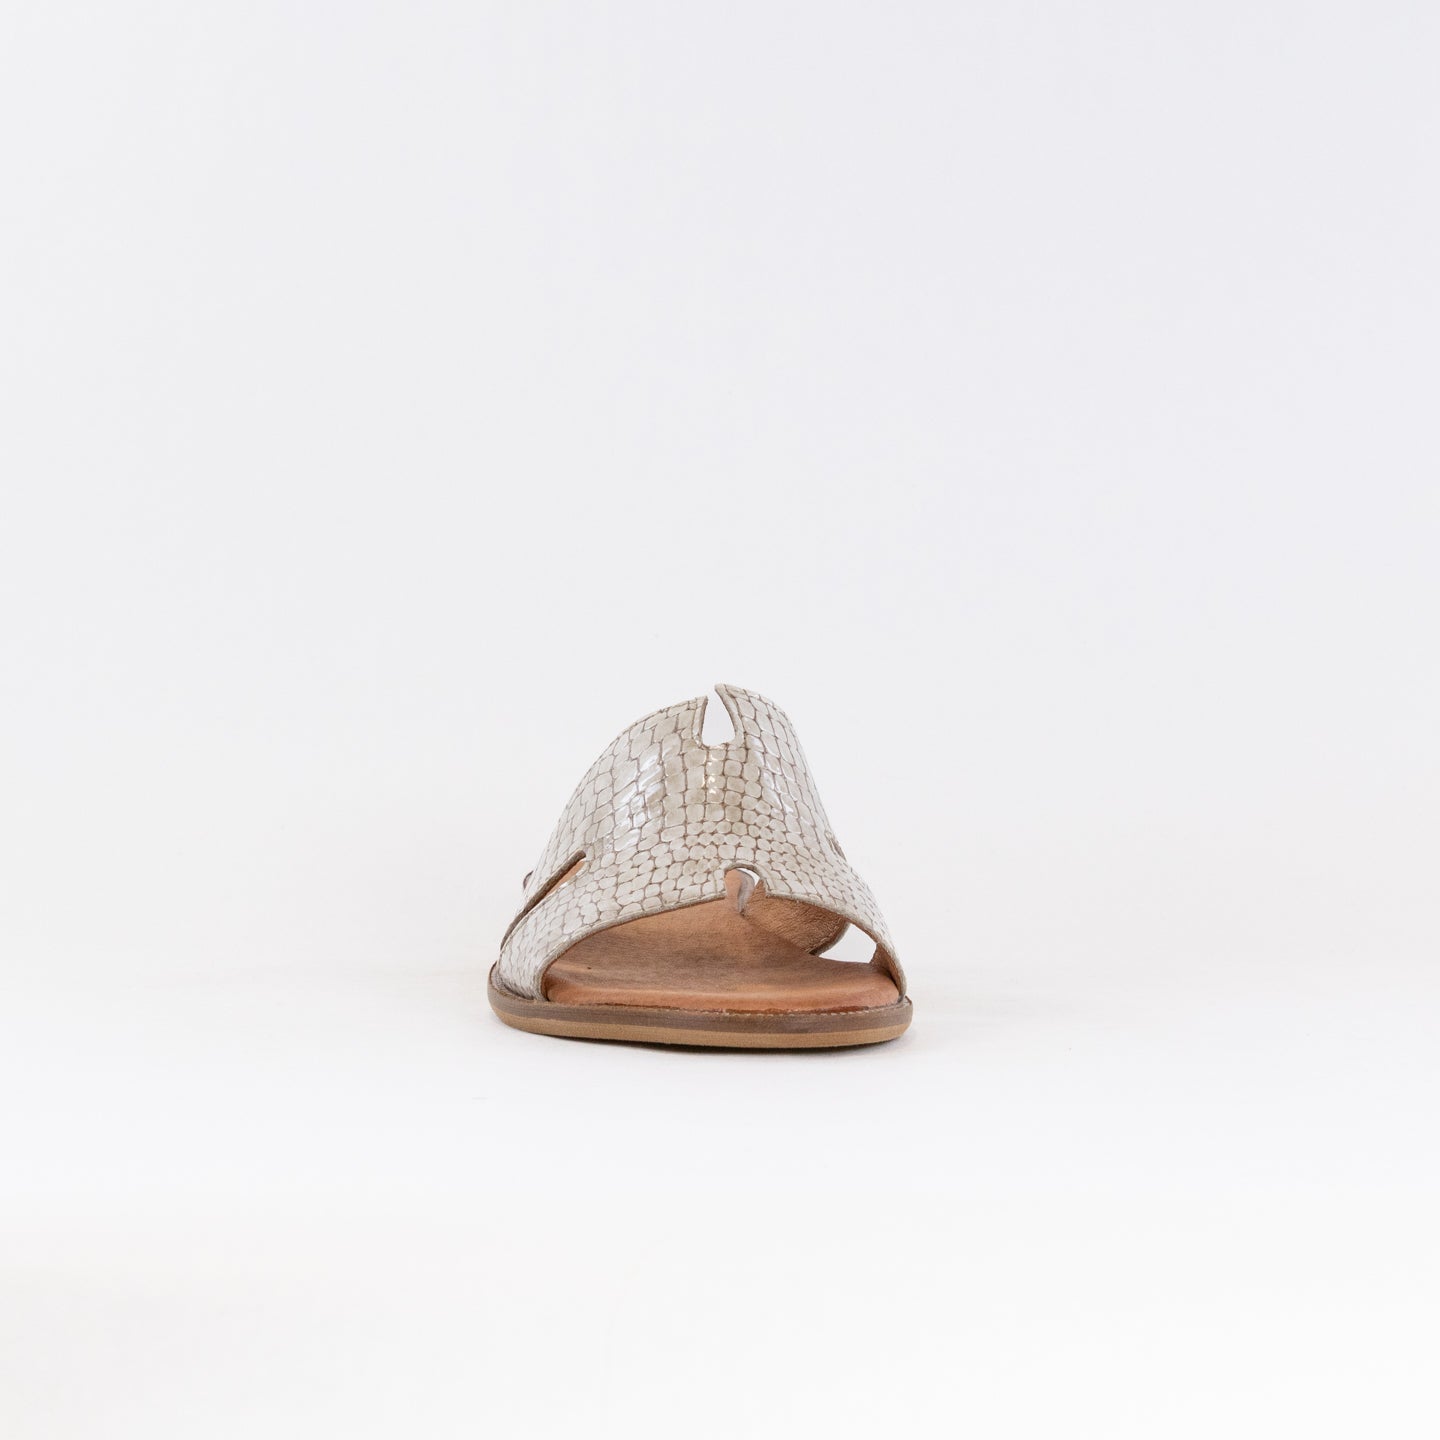 V-Italia 537 Sandal (Women's) - Bez Krok Patent